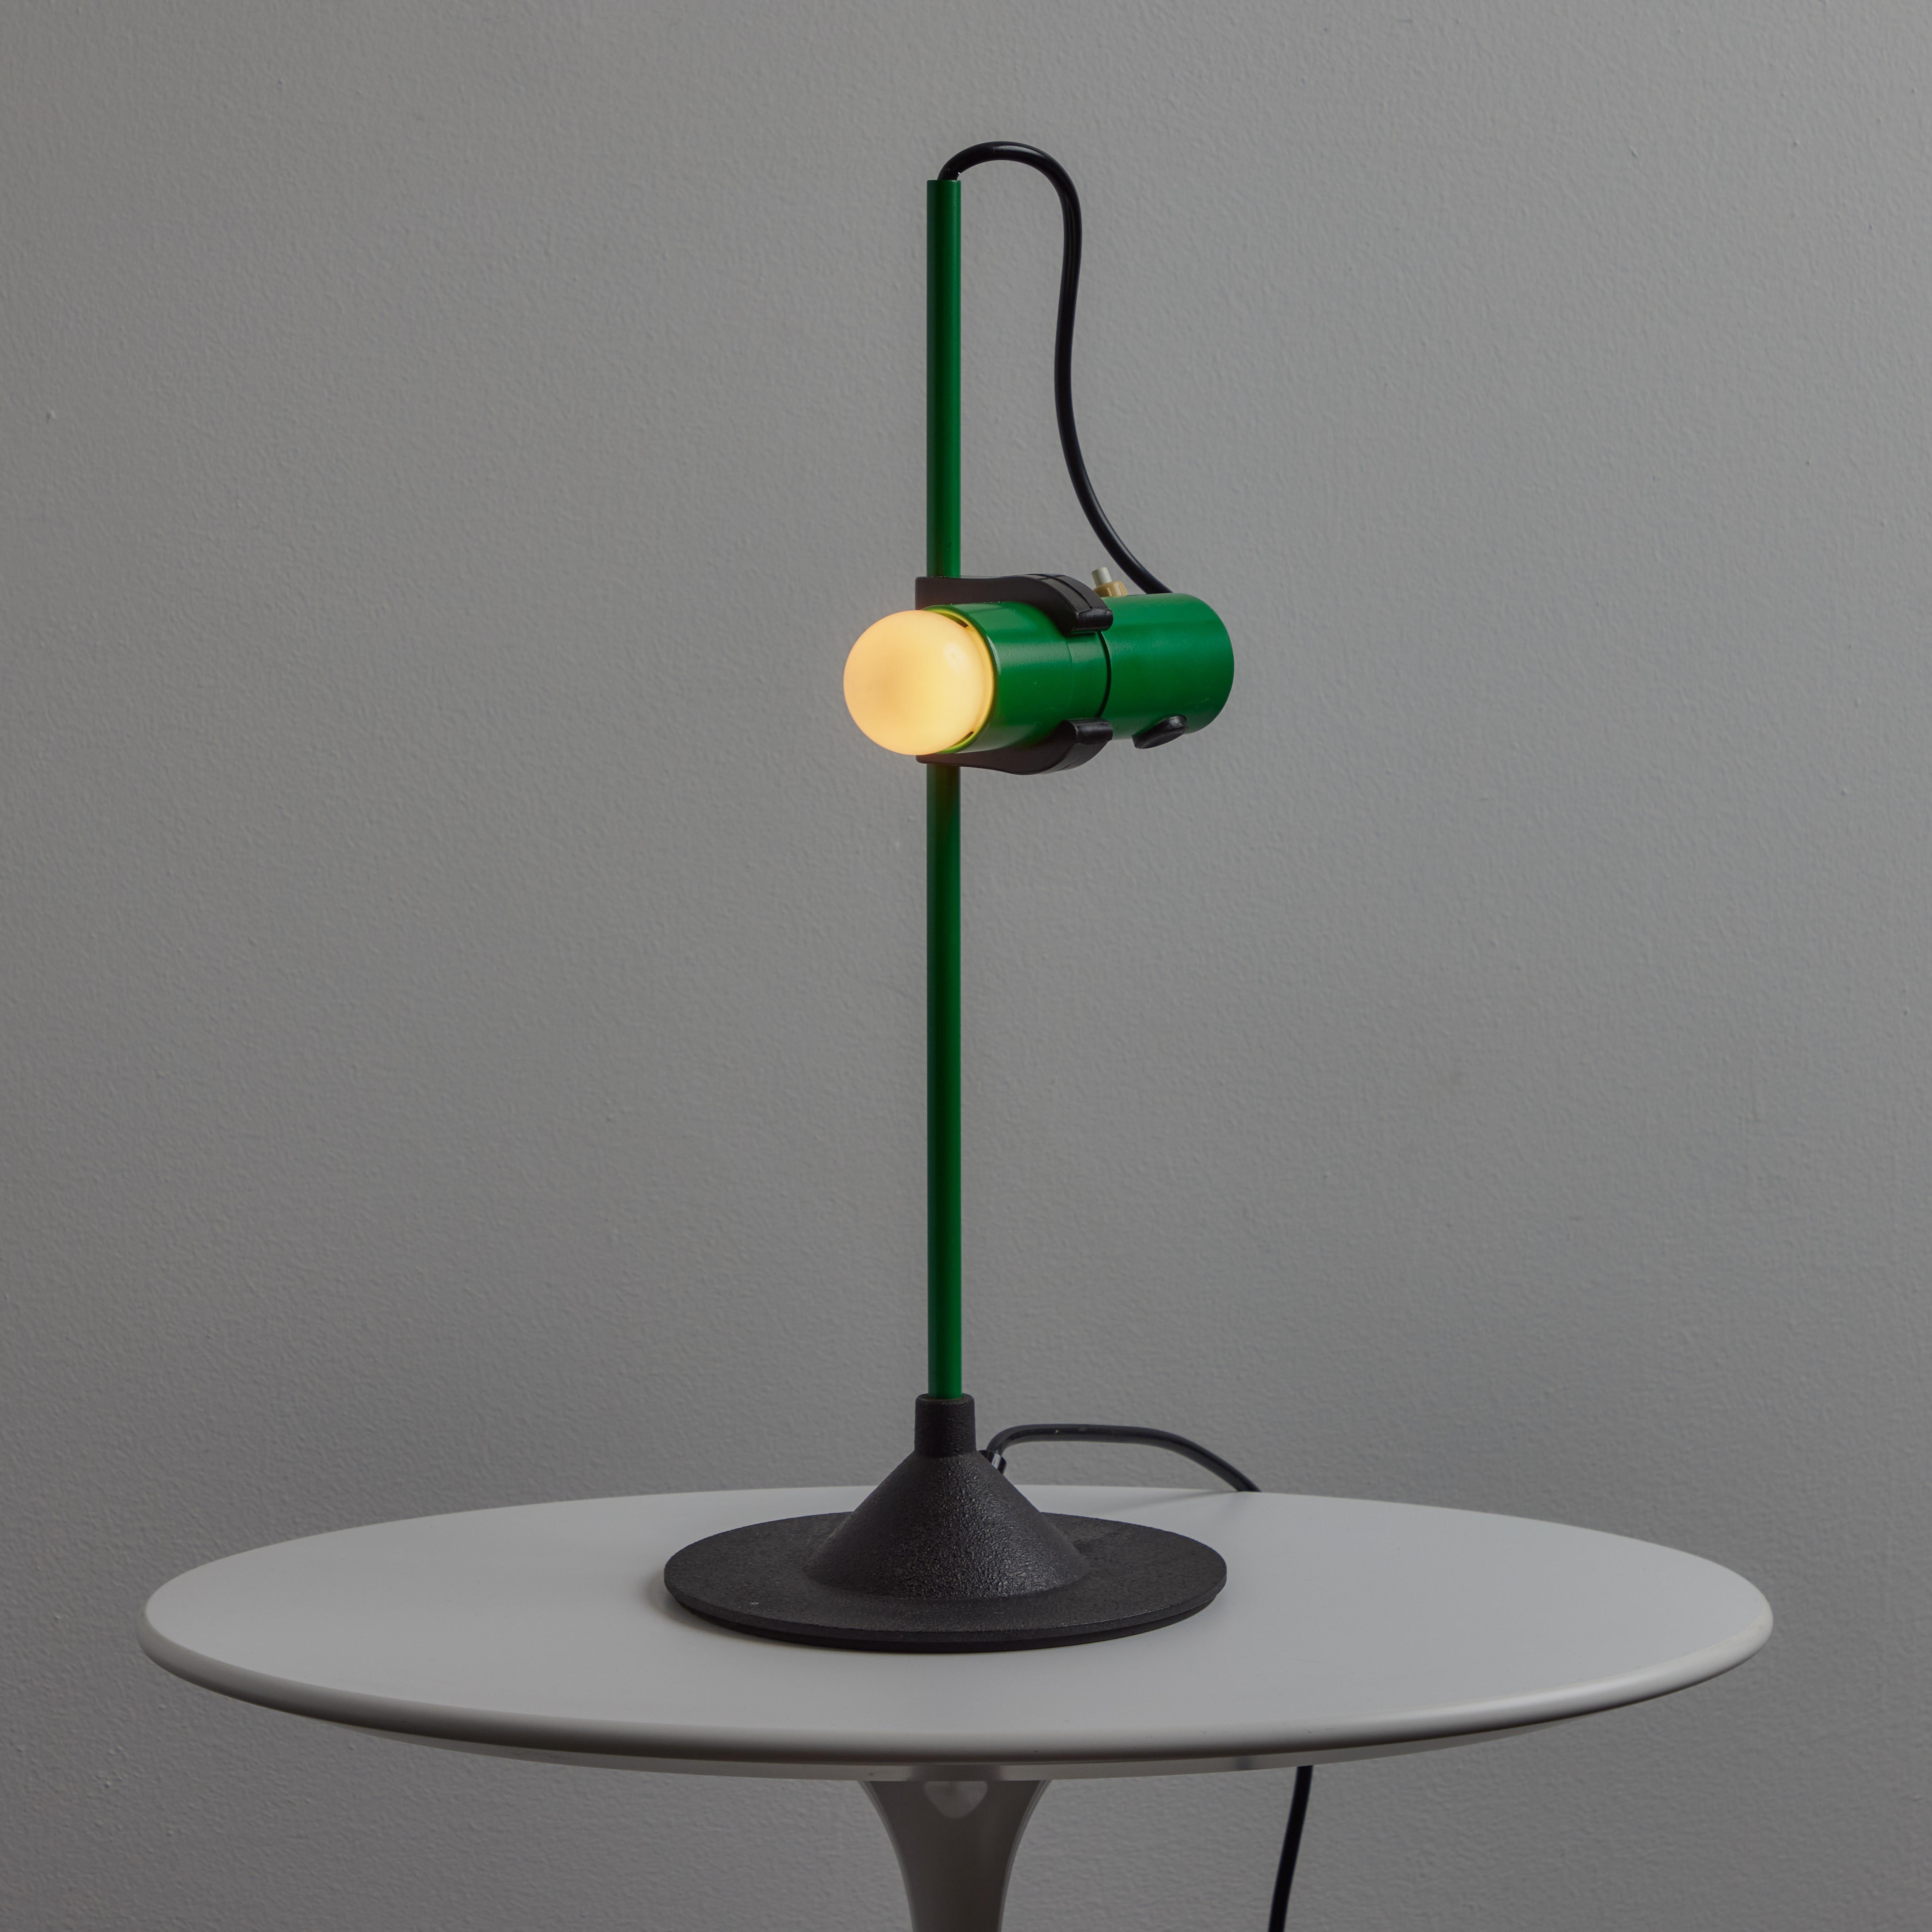 Lampe de table verte des années 1980 Barbieri & Marianelli pour Tronconi. Exécuté en aluminium peint avec une base en fonte noire. D'un design étonnamment simple mais raffiné pour l'époque, cette lampe de table très sculpturale peut être facilement